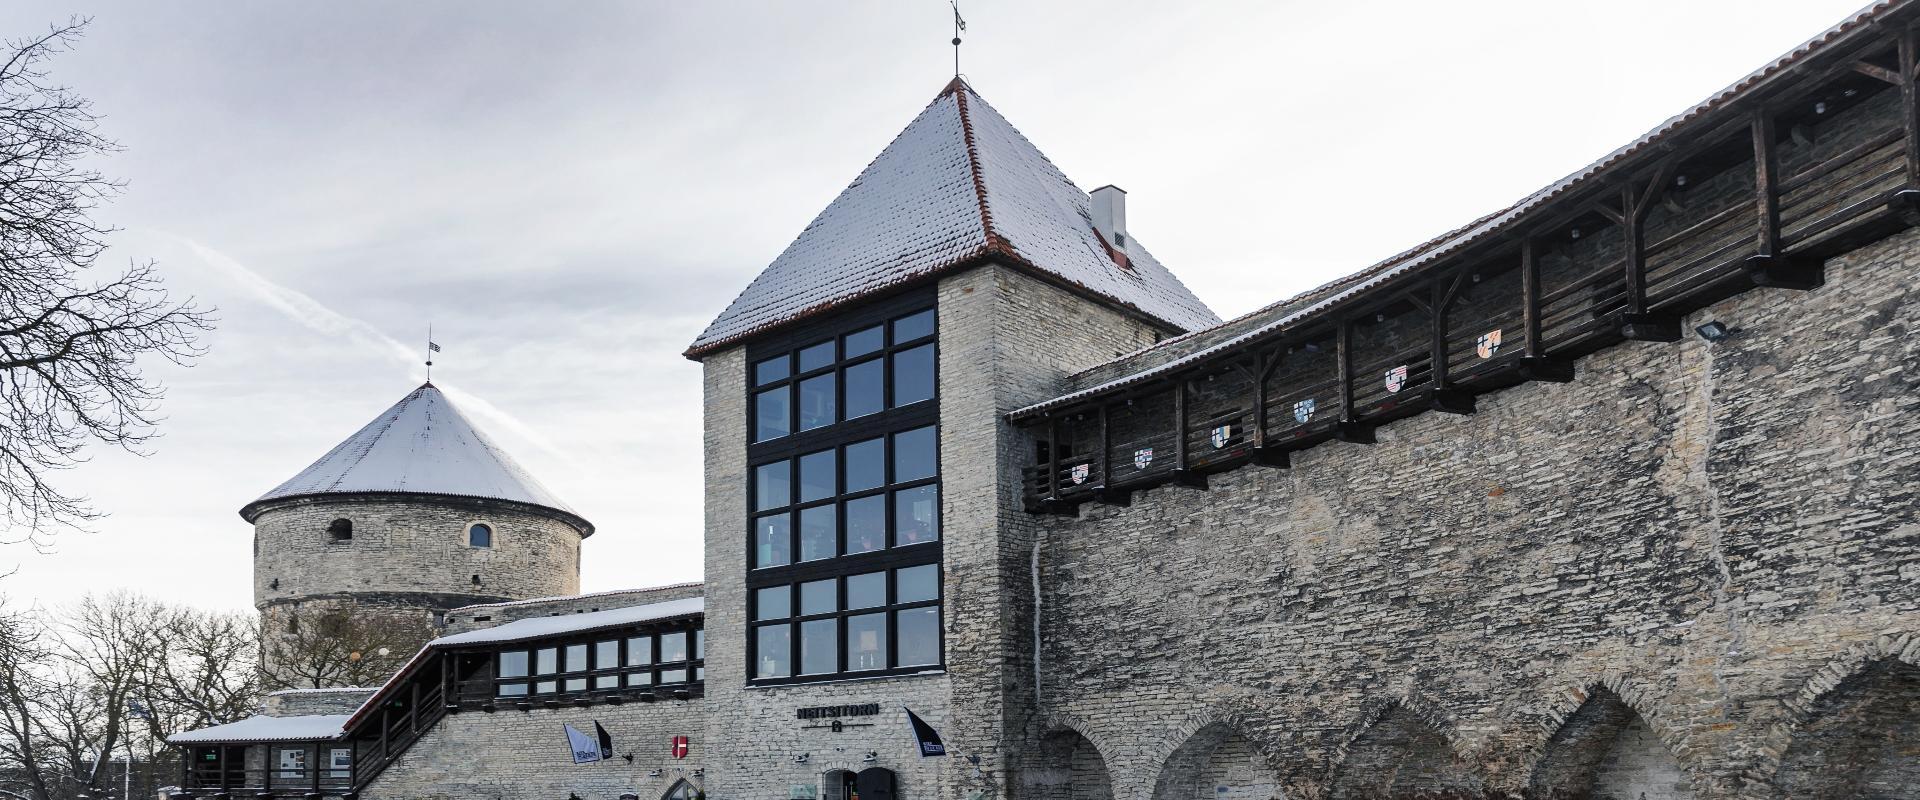 Das Festungsmuseum bildet eine etwa 500 m lange Museumsanlage. Dazu gehören vier Türme: Kiek in de Kök, der Mägdeturm, der Marstallturm und das Tor am